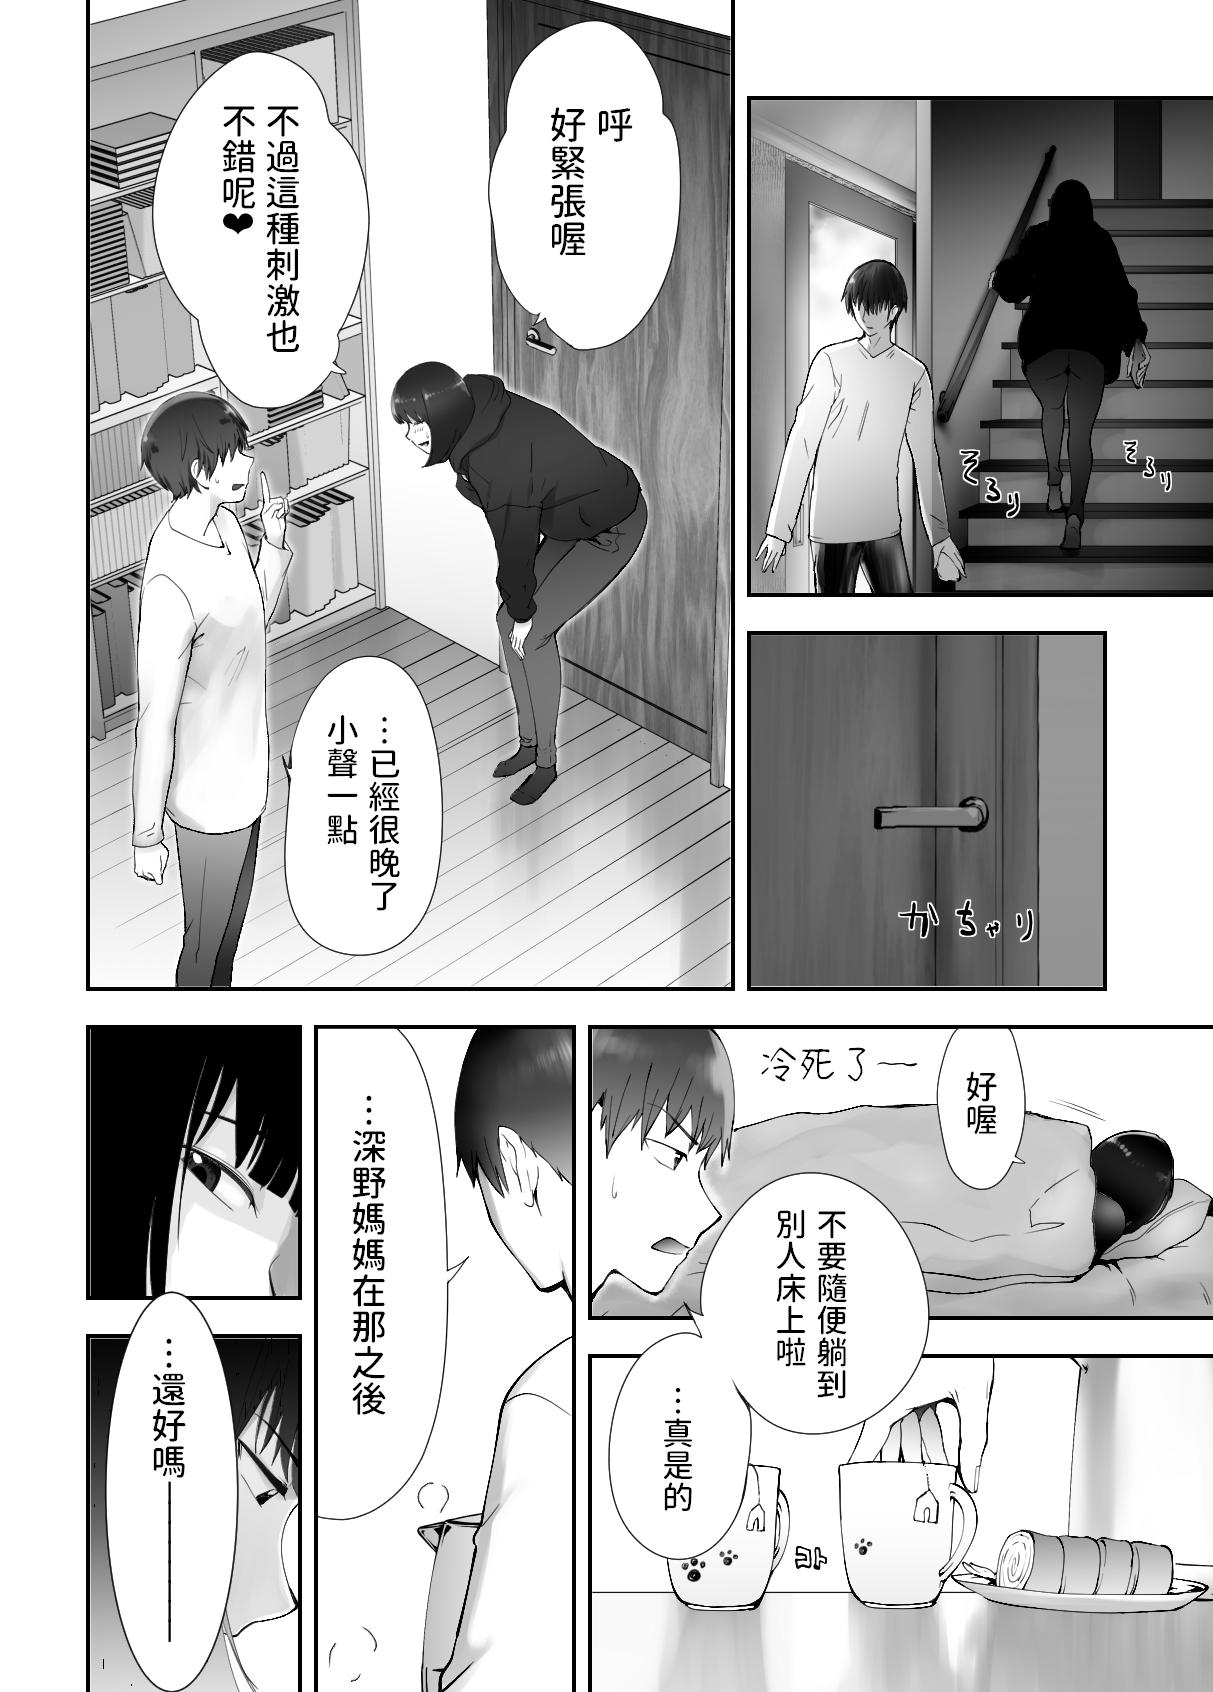 Big Butt Osananajimi ga Mama to Yatte Imasu. 9 - Original Motel - Page 4